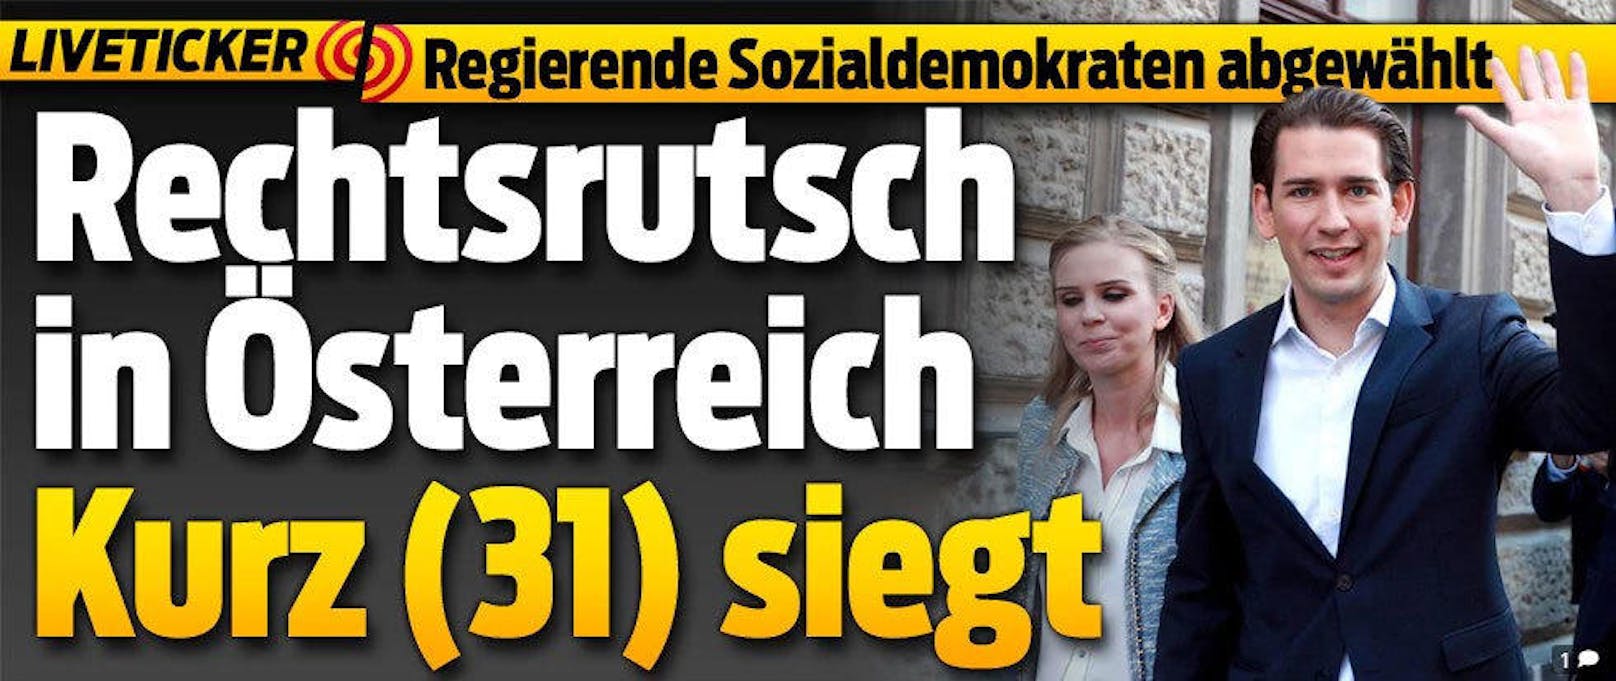 <b>BLICK.ch</b>: "Rechtsrutsch in Österreich. Kurz (31) siegt"